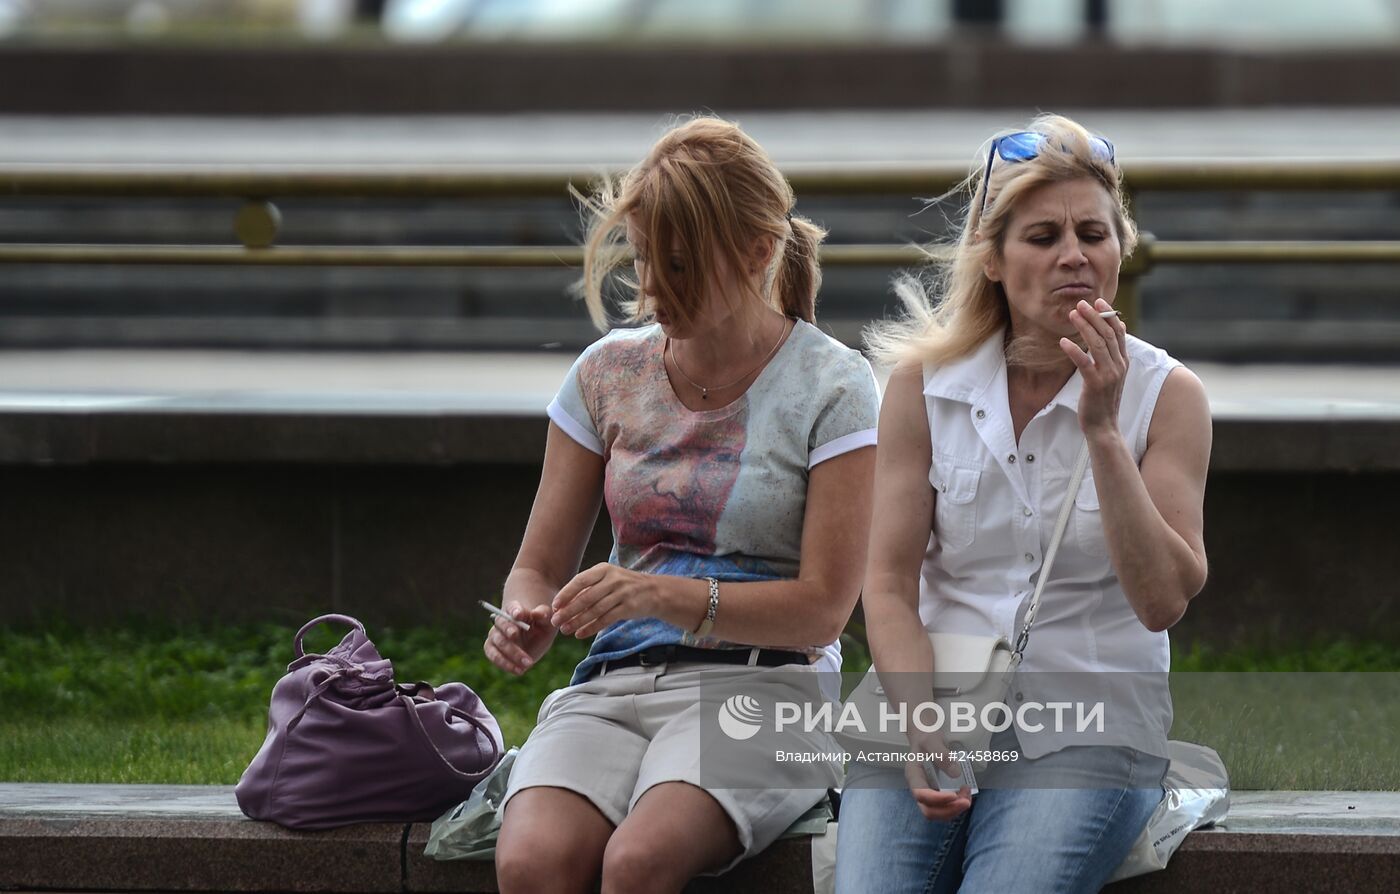 Курение в общественных местах